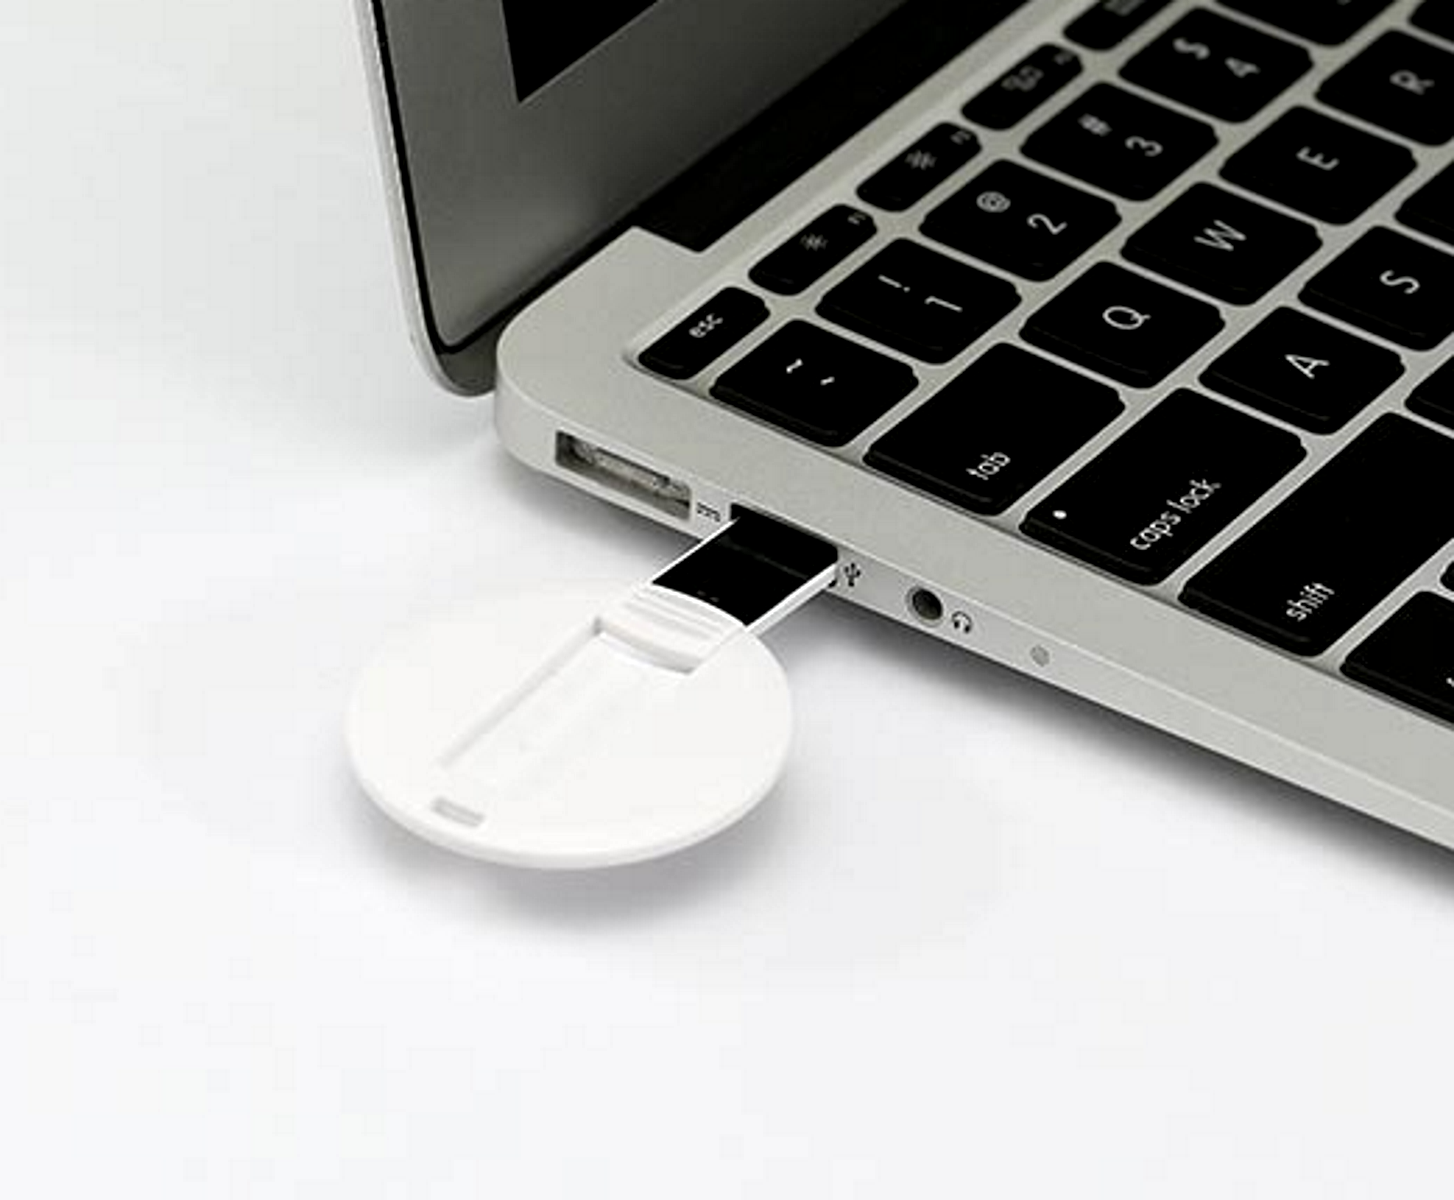 USB GERMANY ® DISC USB-Stick GB) (Weiß, 1